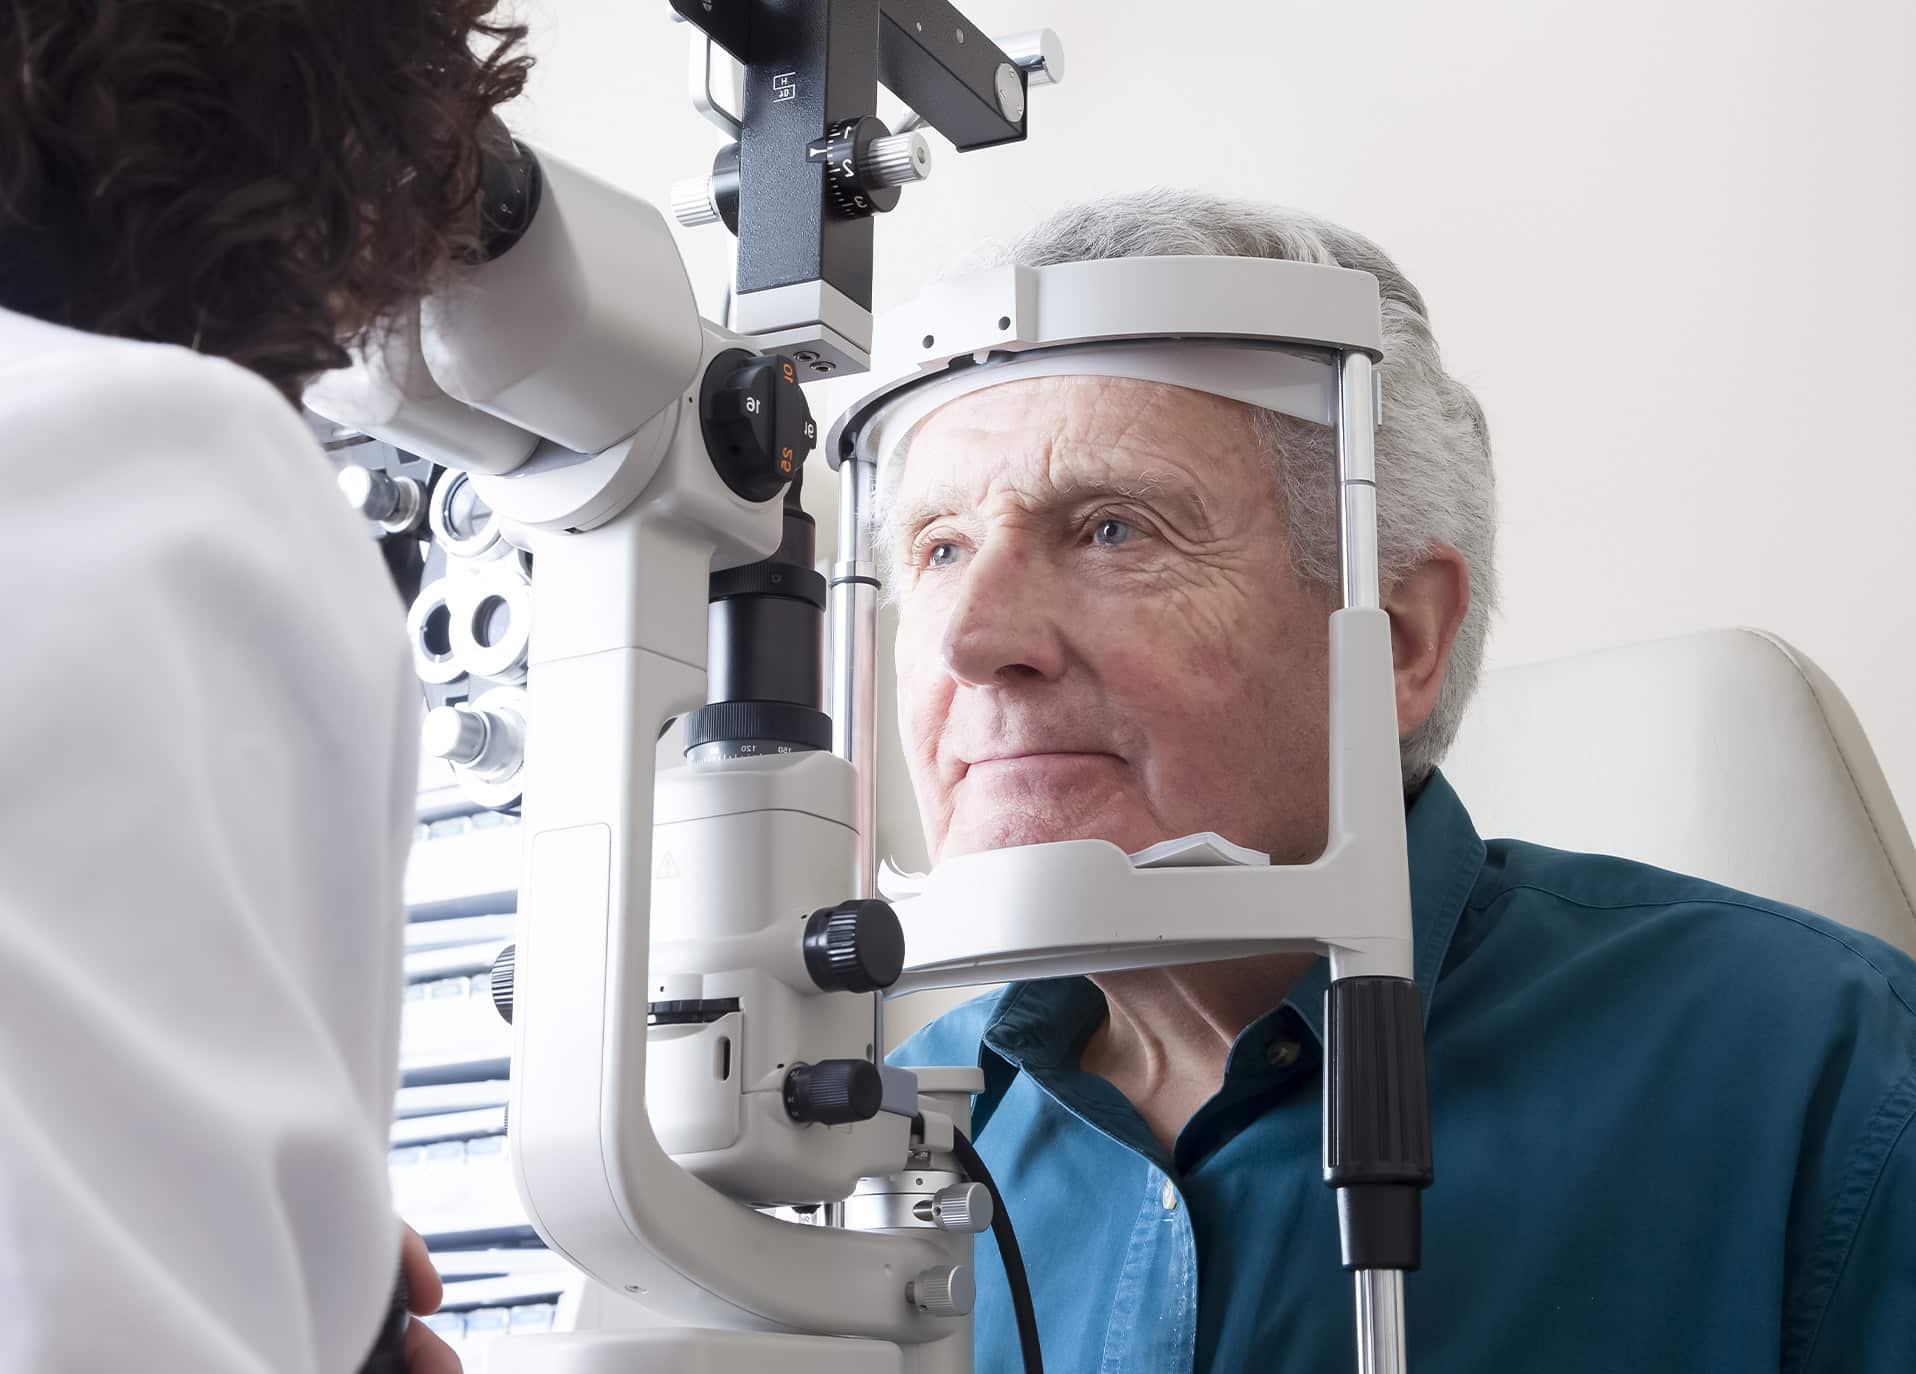 Chirurgie de la cataracte à Strasbourg | Chirurgie réfractive | Dr Grasswill